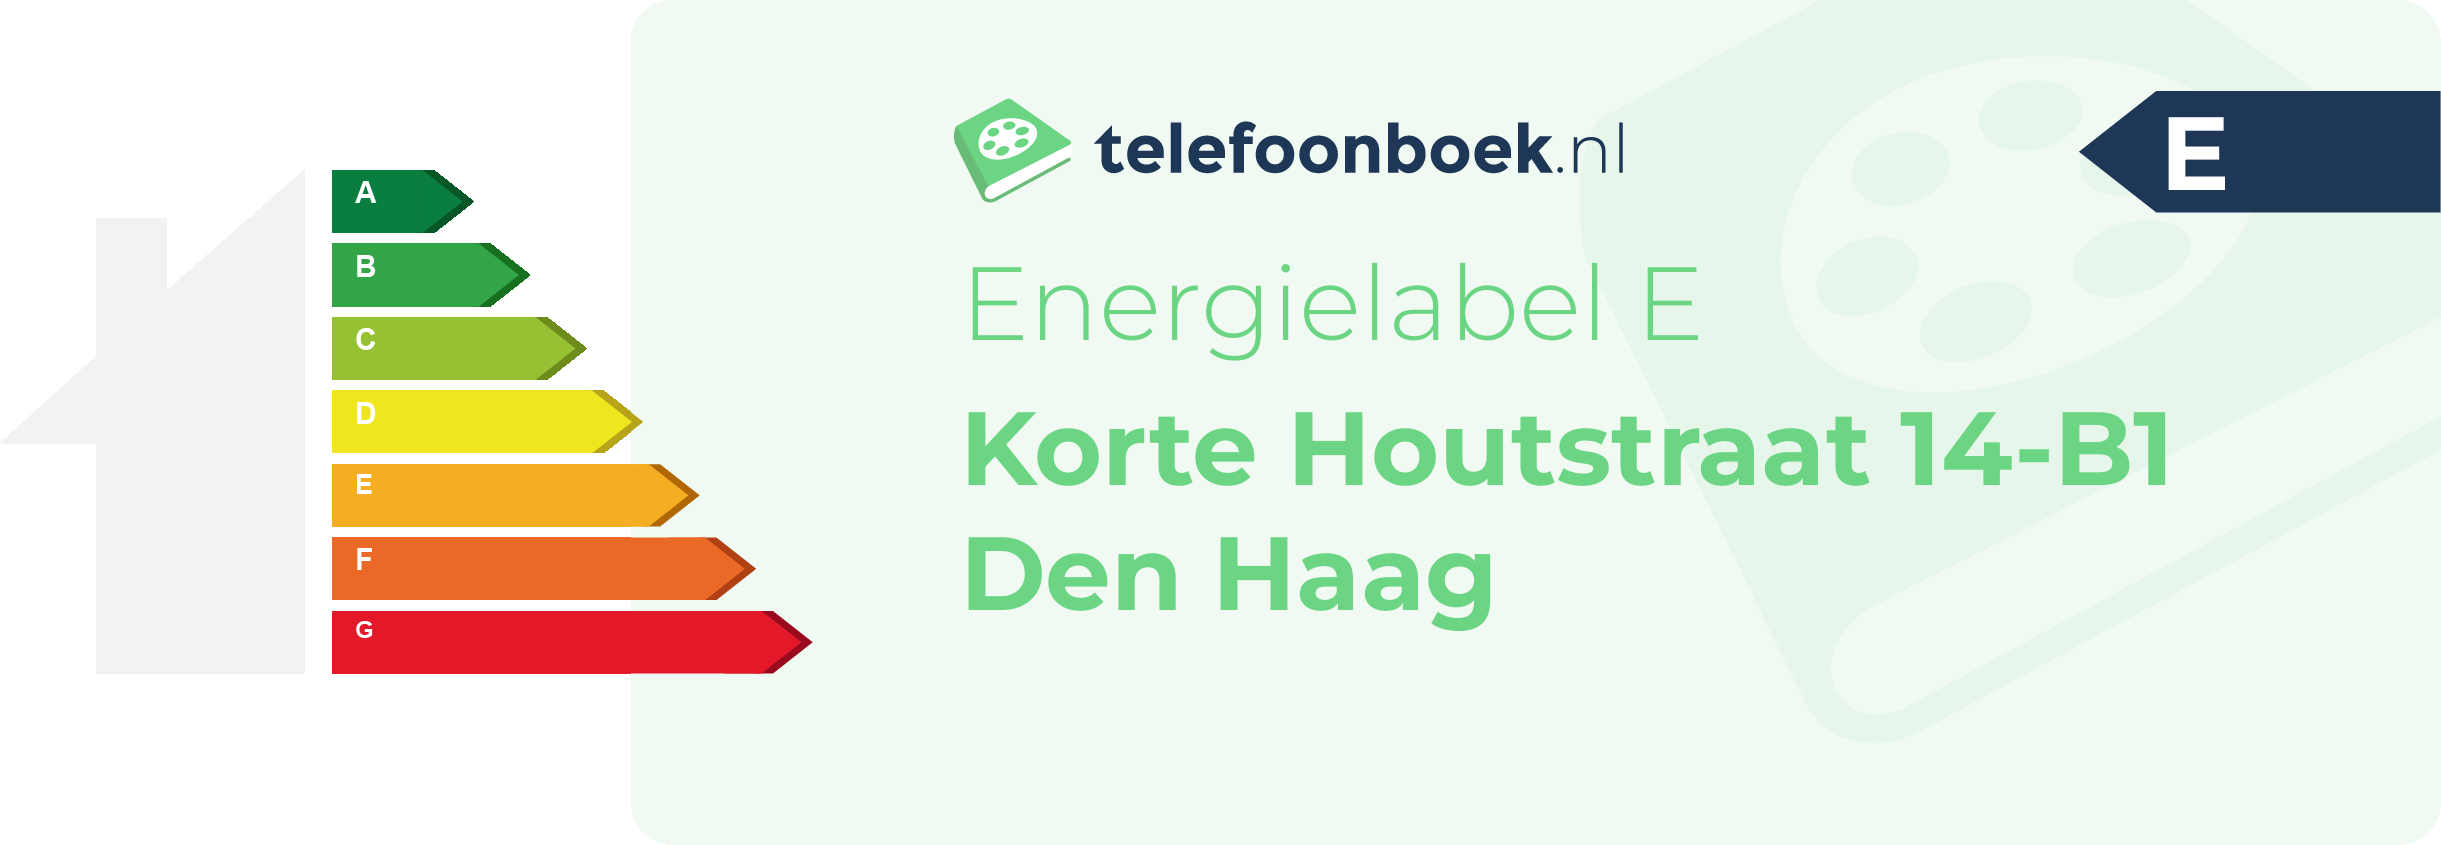 Energielabel Korte Houtstraat 14-B1 Den Haag